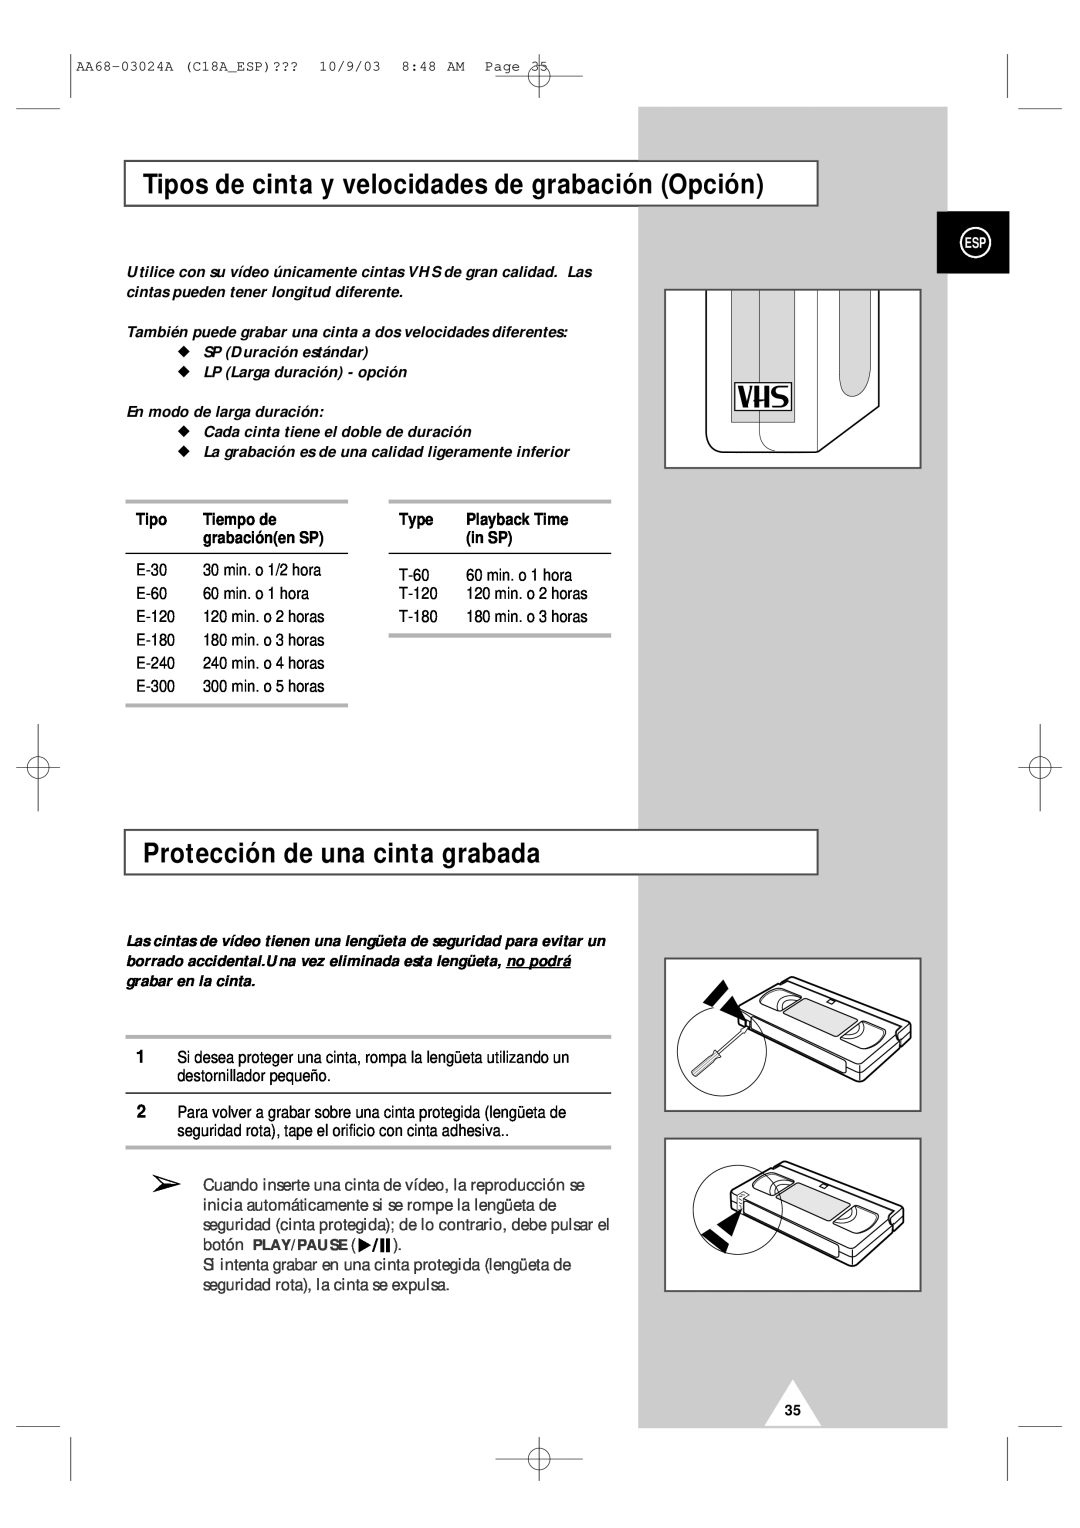 Samsung UW17J11VD5XXEF Tipos de cinta y velocidades de grabación Opción, Protección de una cinta grabada, botón PLAY/PAUSE 